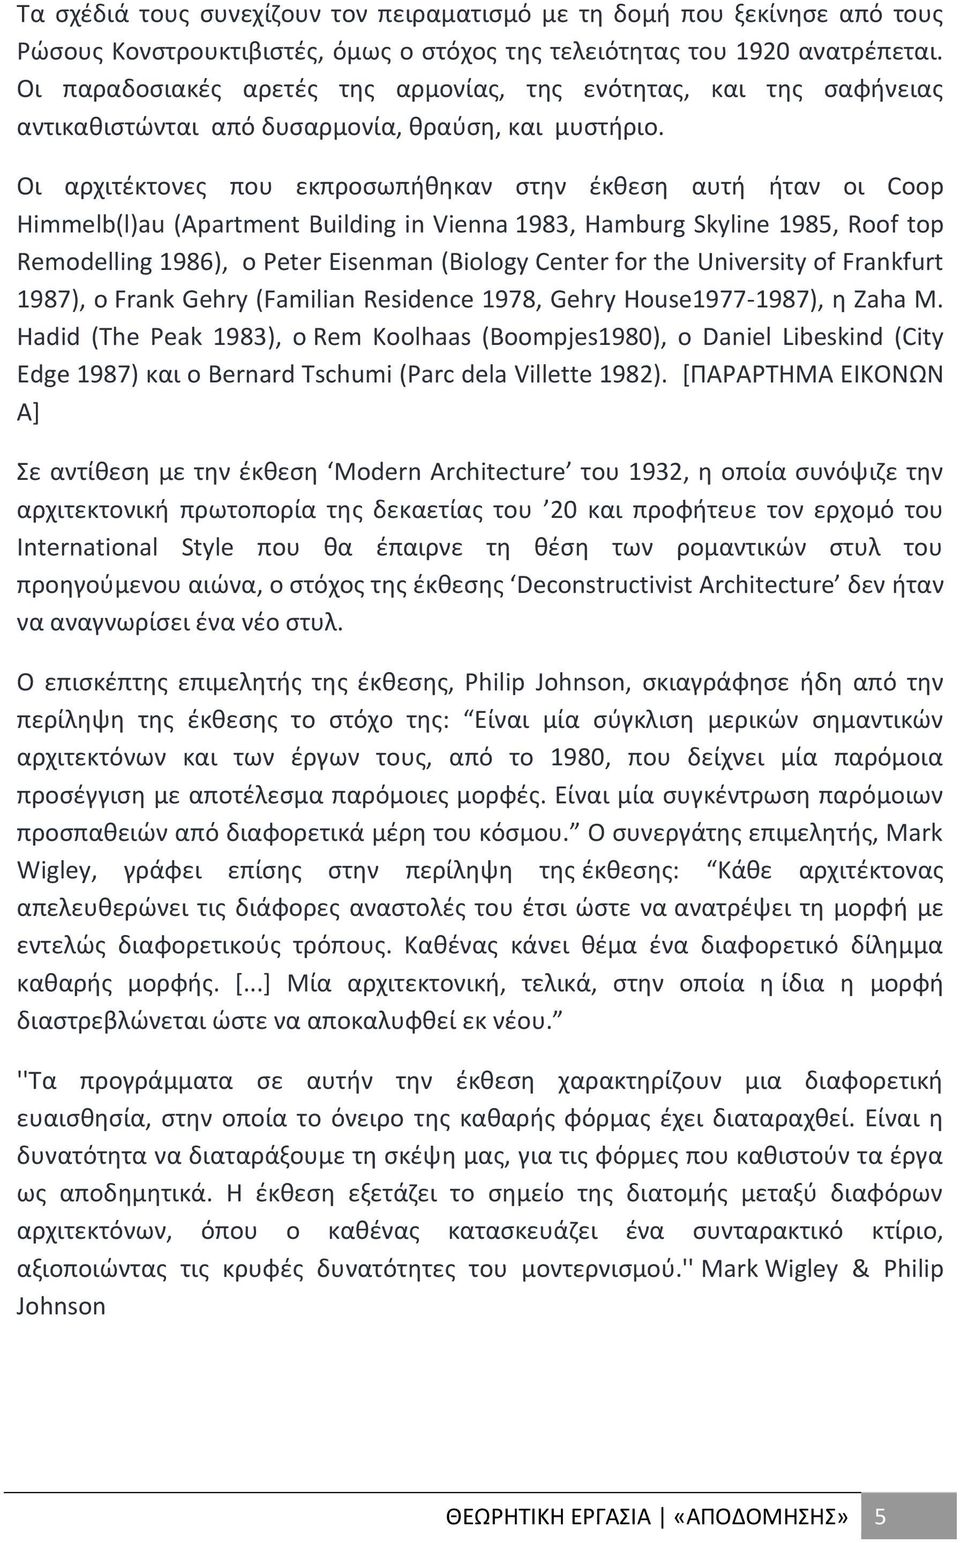 Οι αρχιτέκτονες που εκπροσωπήθηκαν στην έκθεση αυτή ήταν οι Coop Himmelb(l)au (Apartment Building in Vienna 1983, Hamburg Skyline 1985, Roof top Remodelling 1986), ο Peter Eisenman (Biology Center